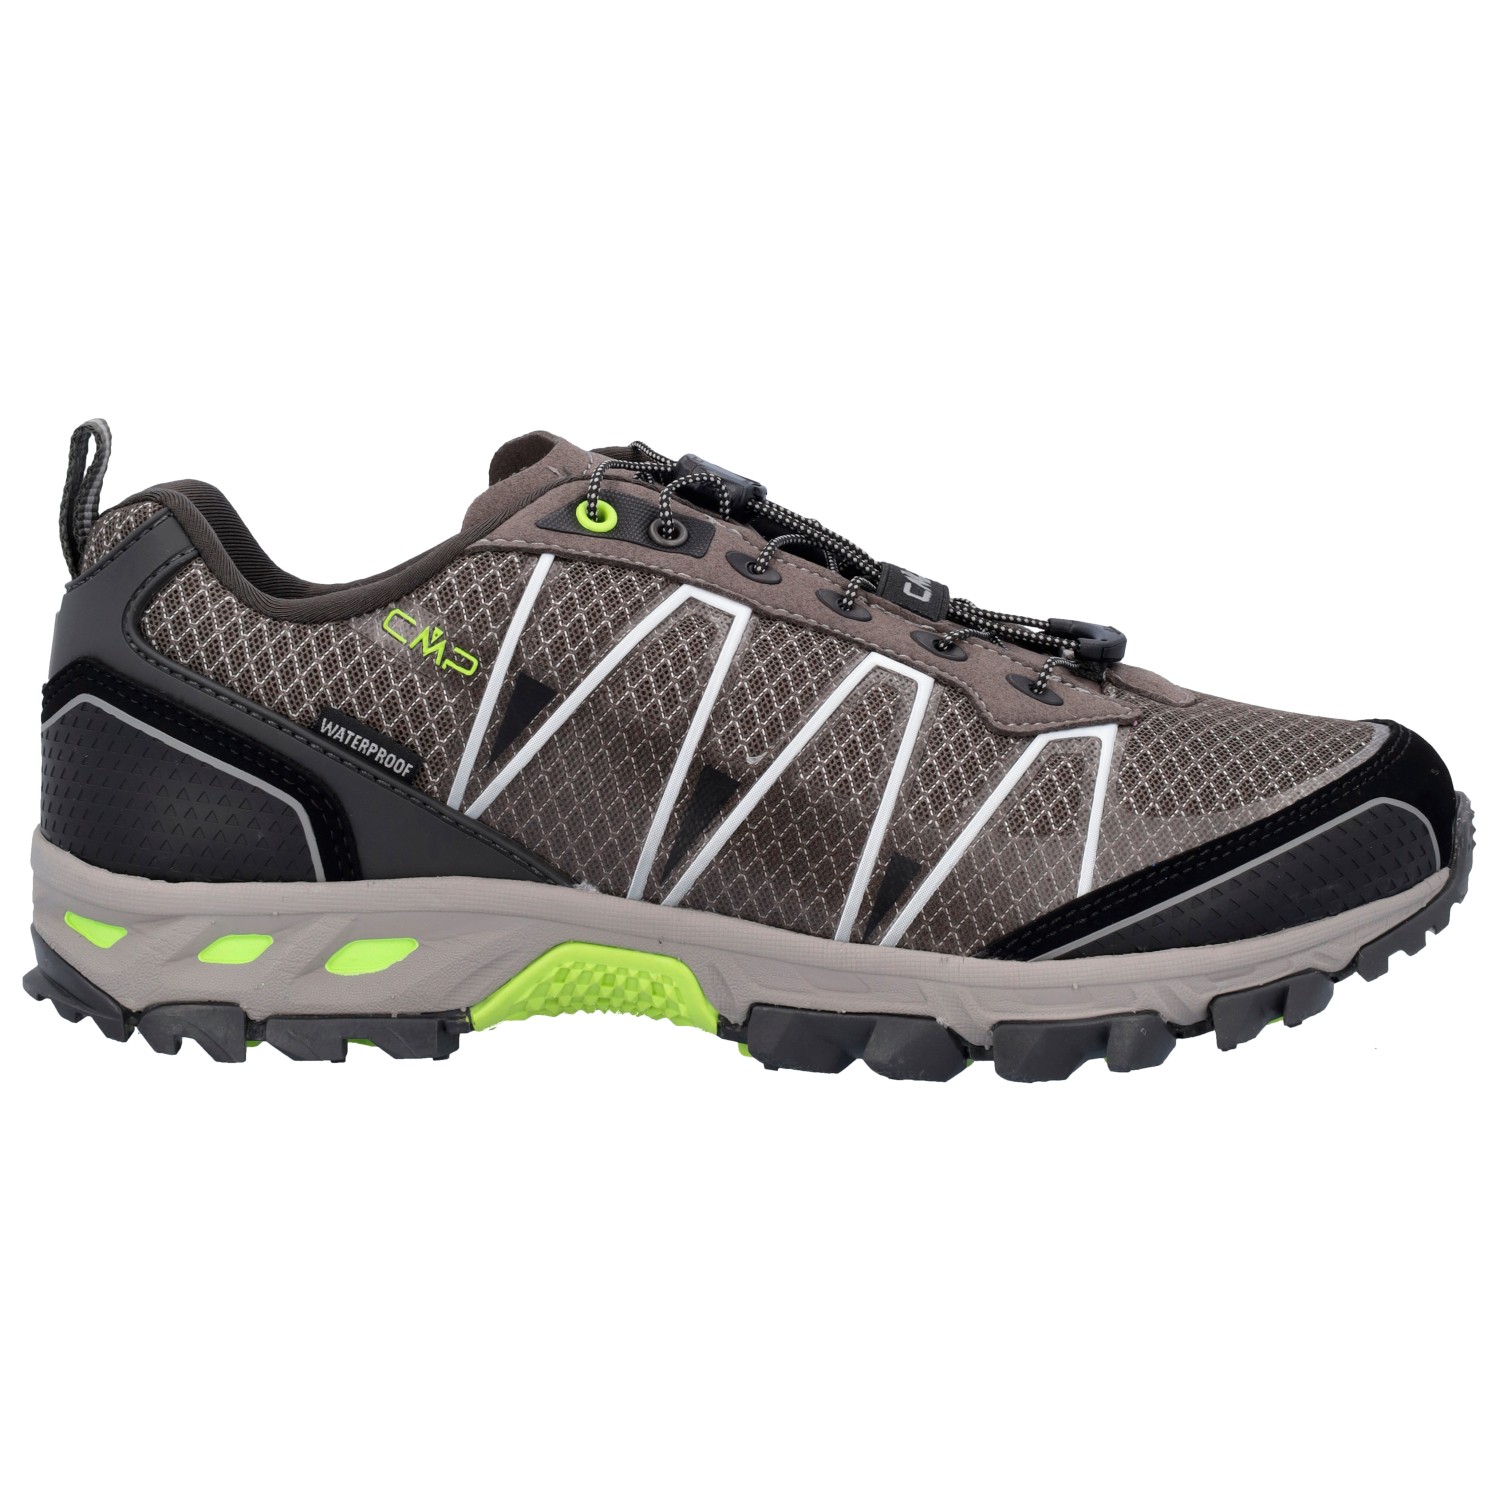 Мультиспортивная обувь Cmp Altak Trail Shoes Waterproof, цвет Fango цена и фото